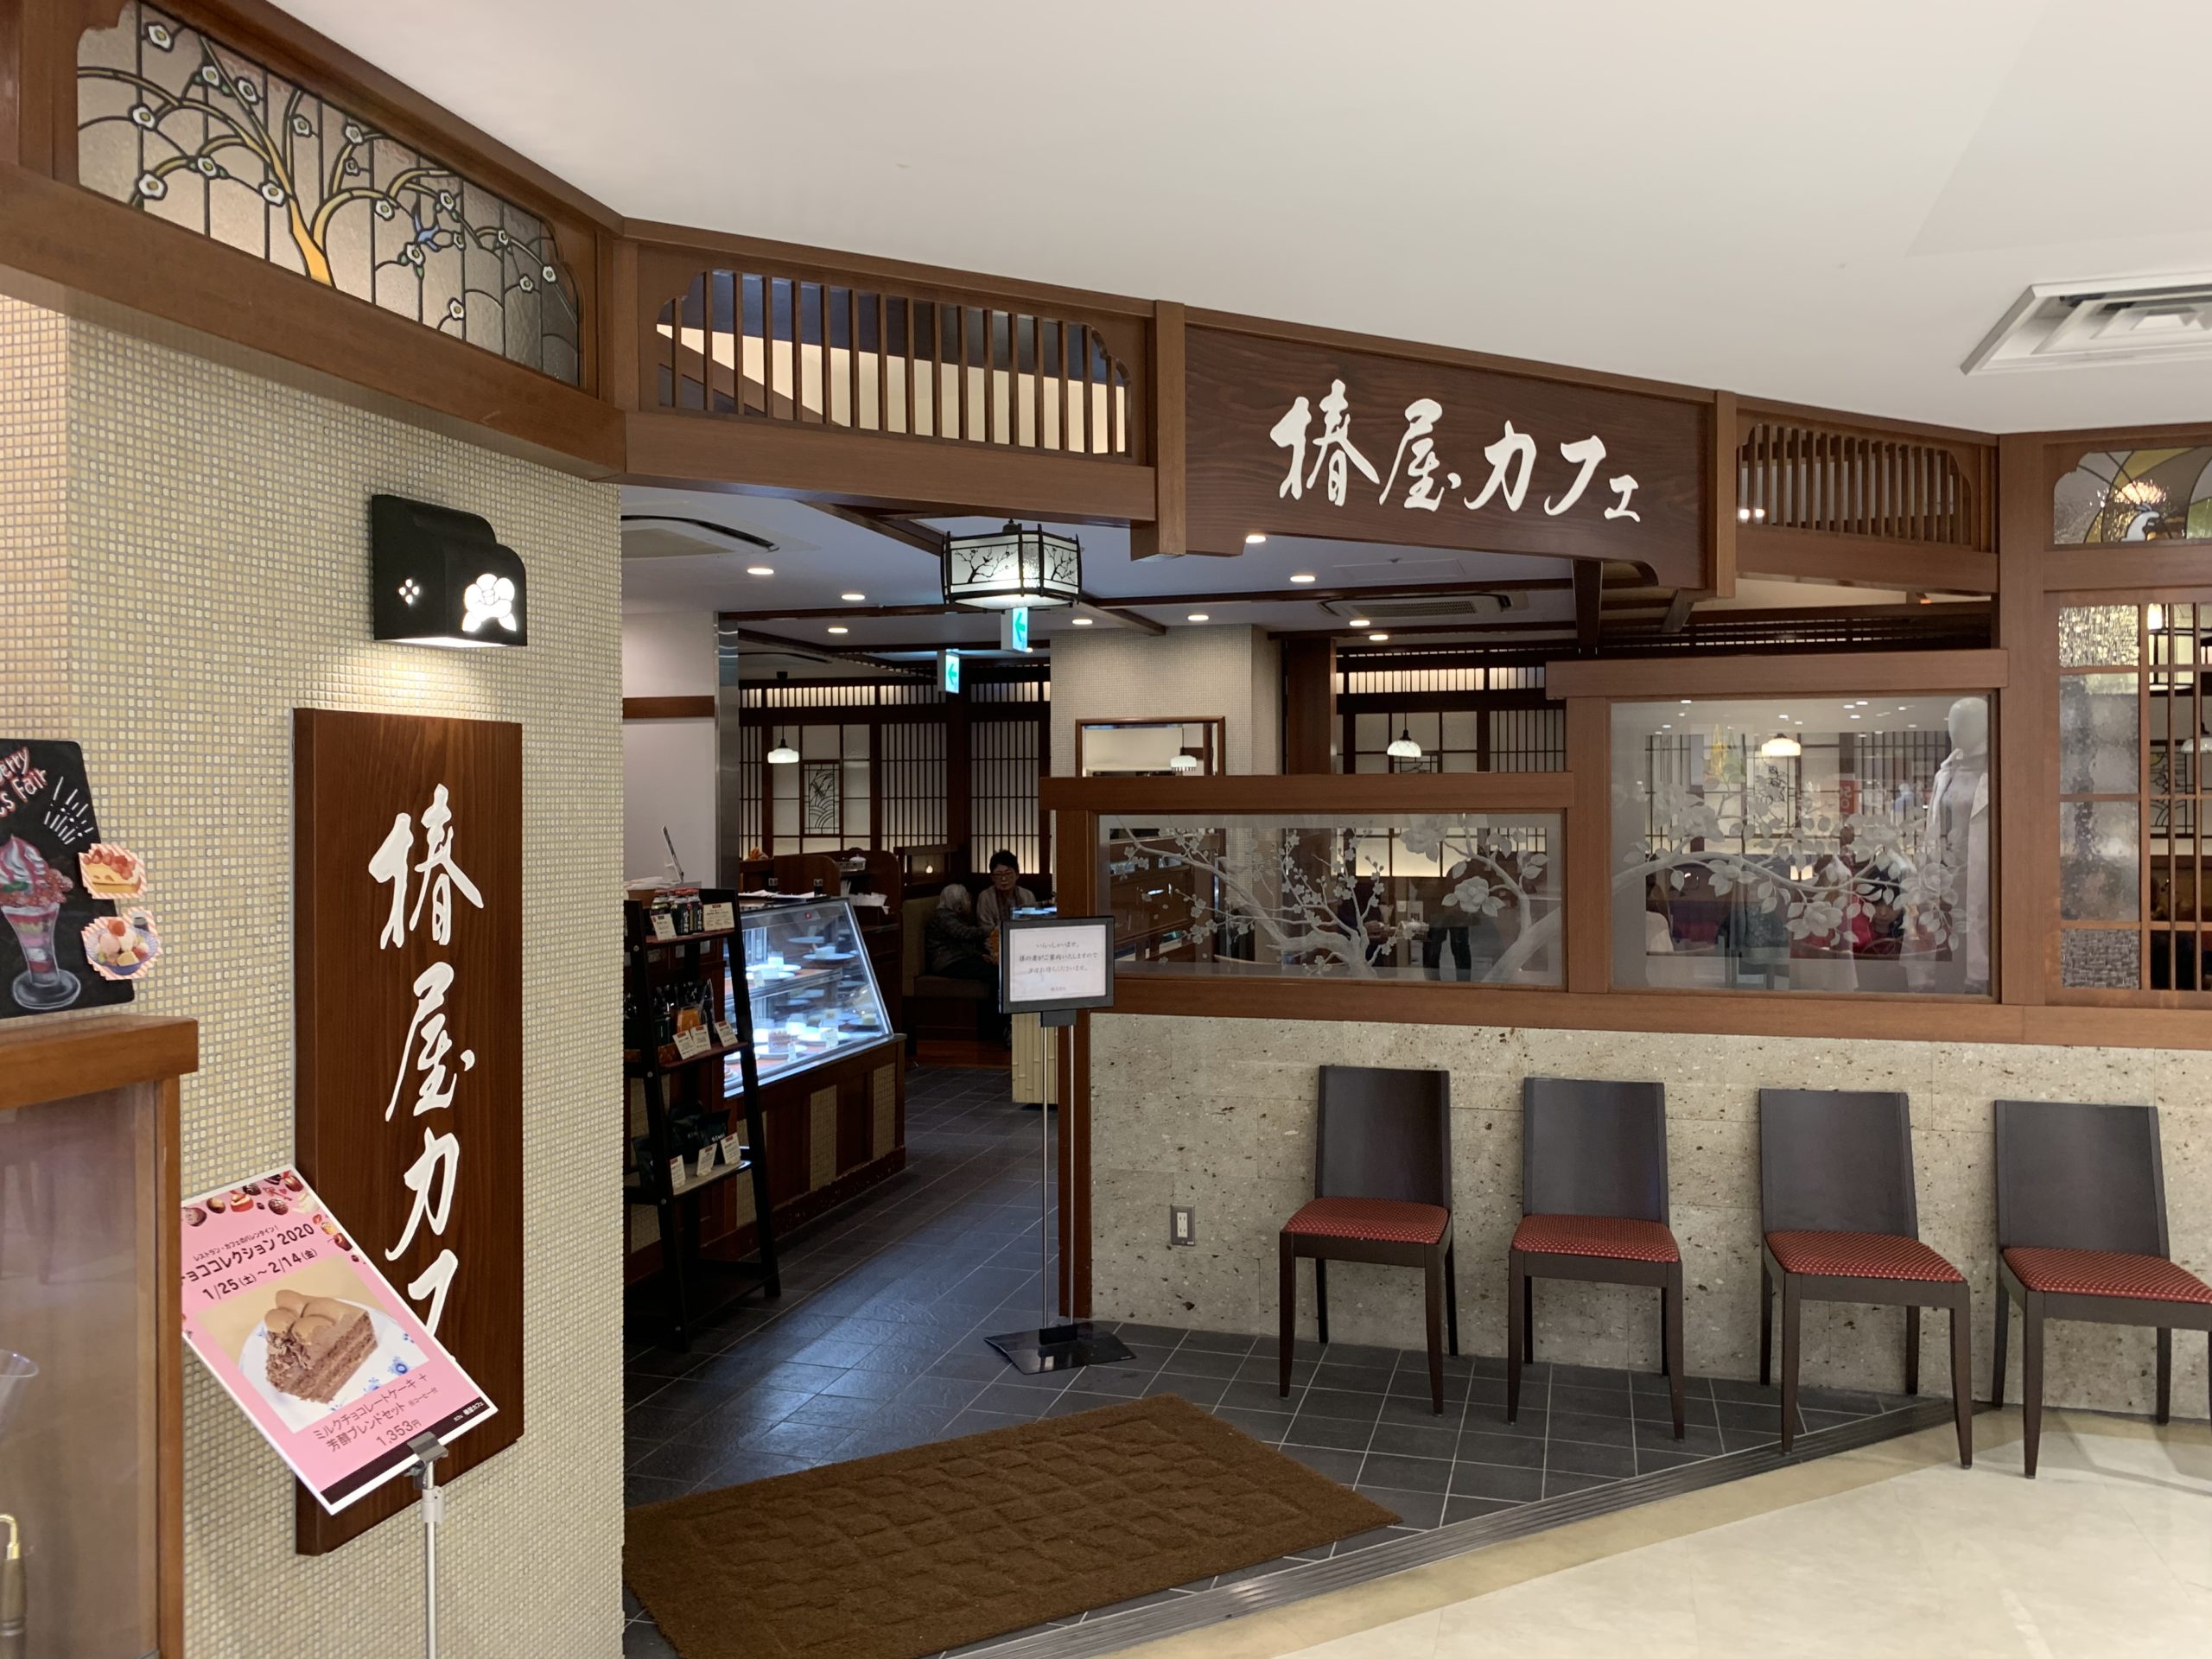 蒲田駅 京急蒲田駅 打ち合わせで使えるおすすめカフェ 喫茶店 地味型ノマドワーカーの作り方